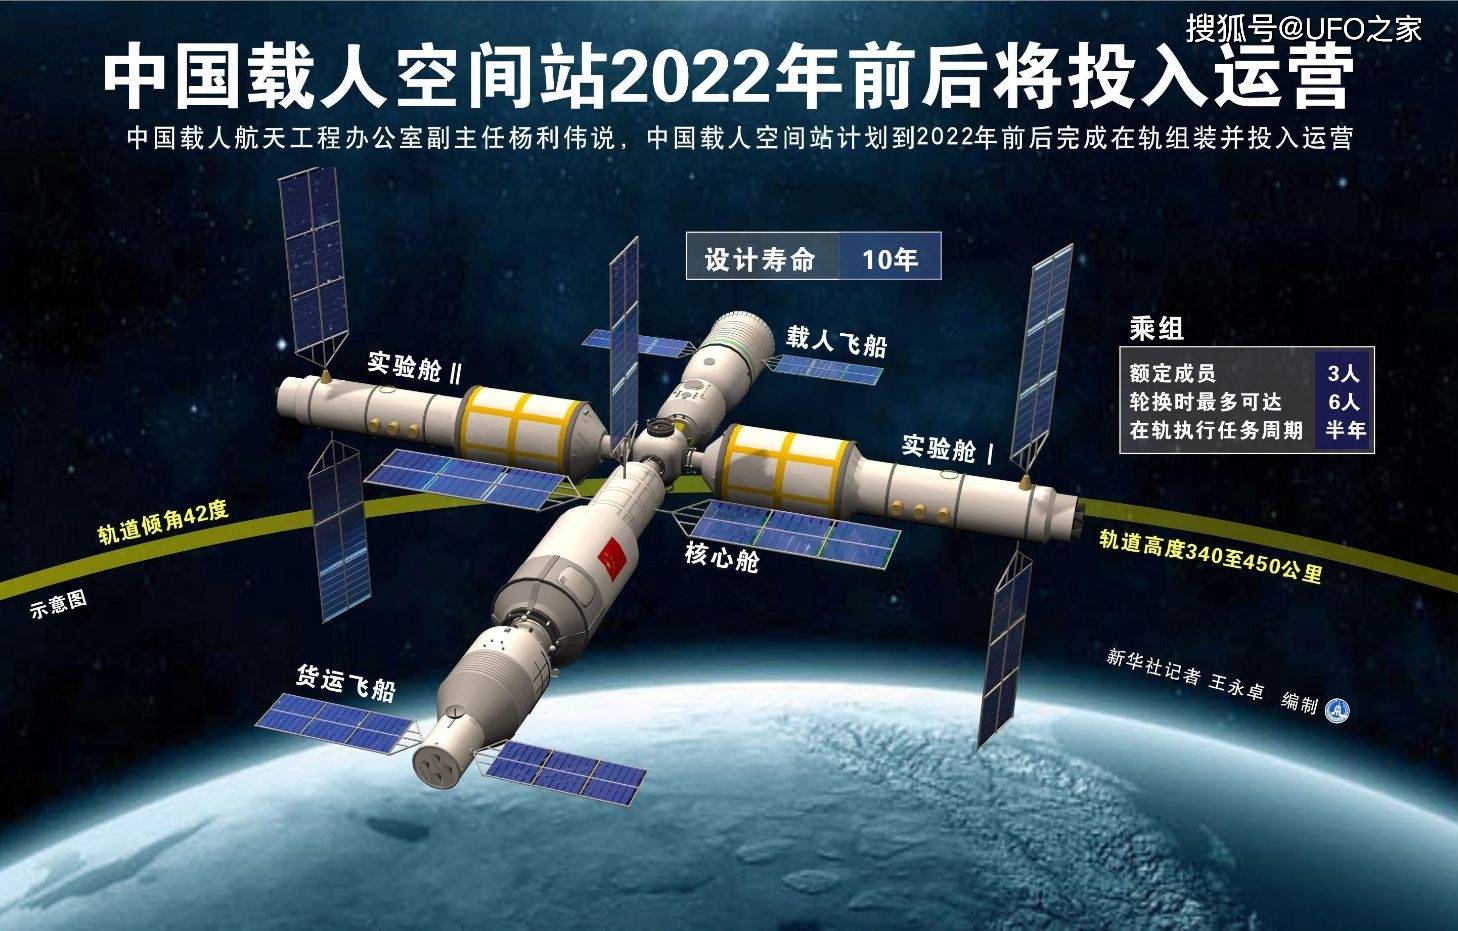 2021中国航天成就图片